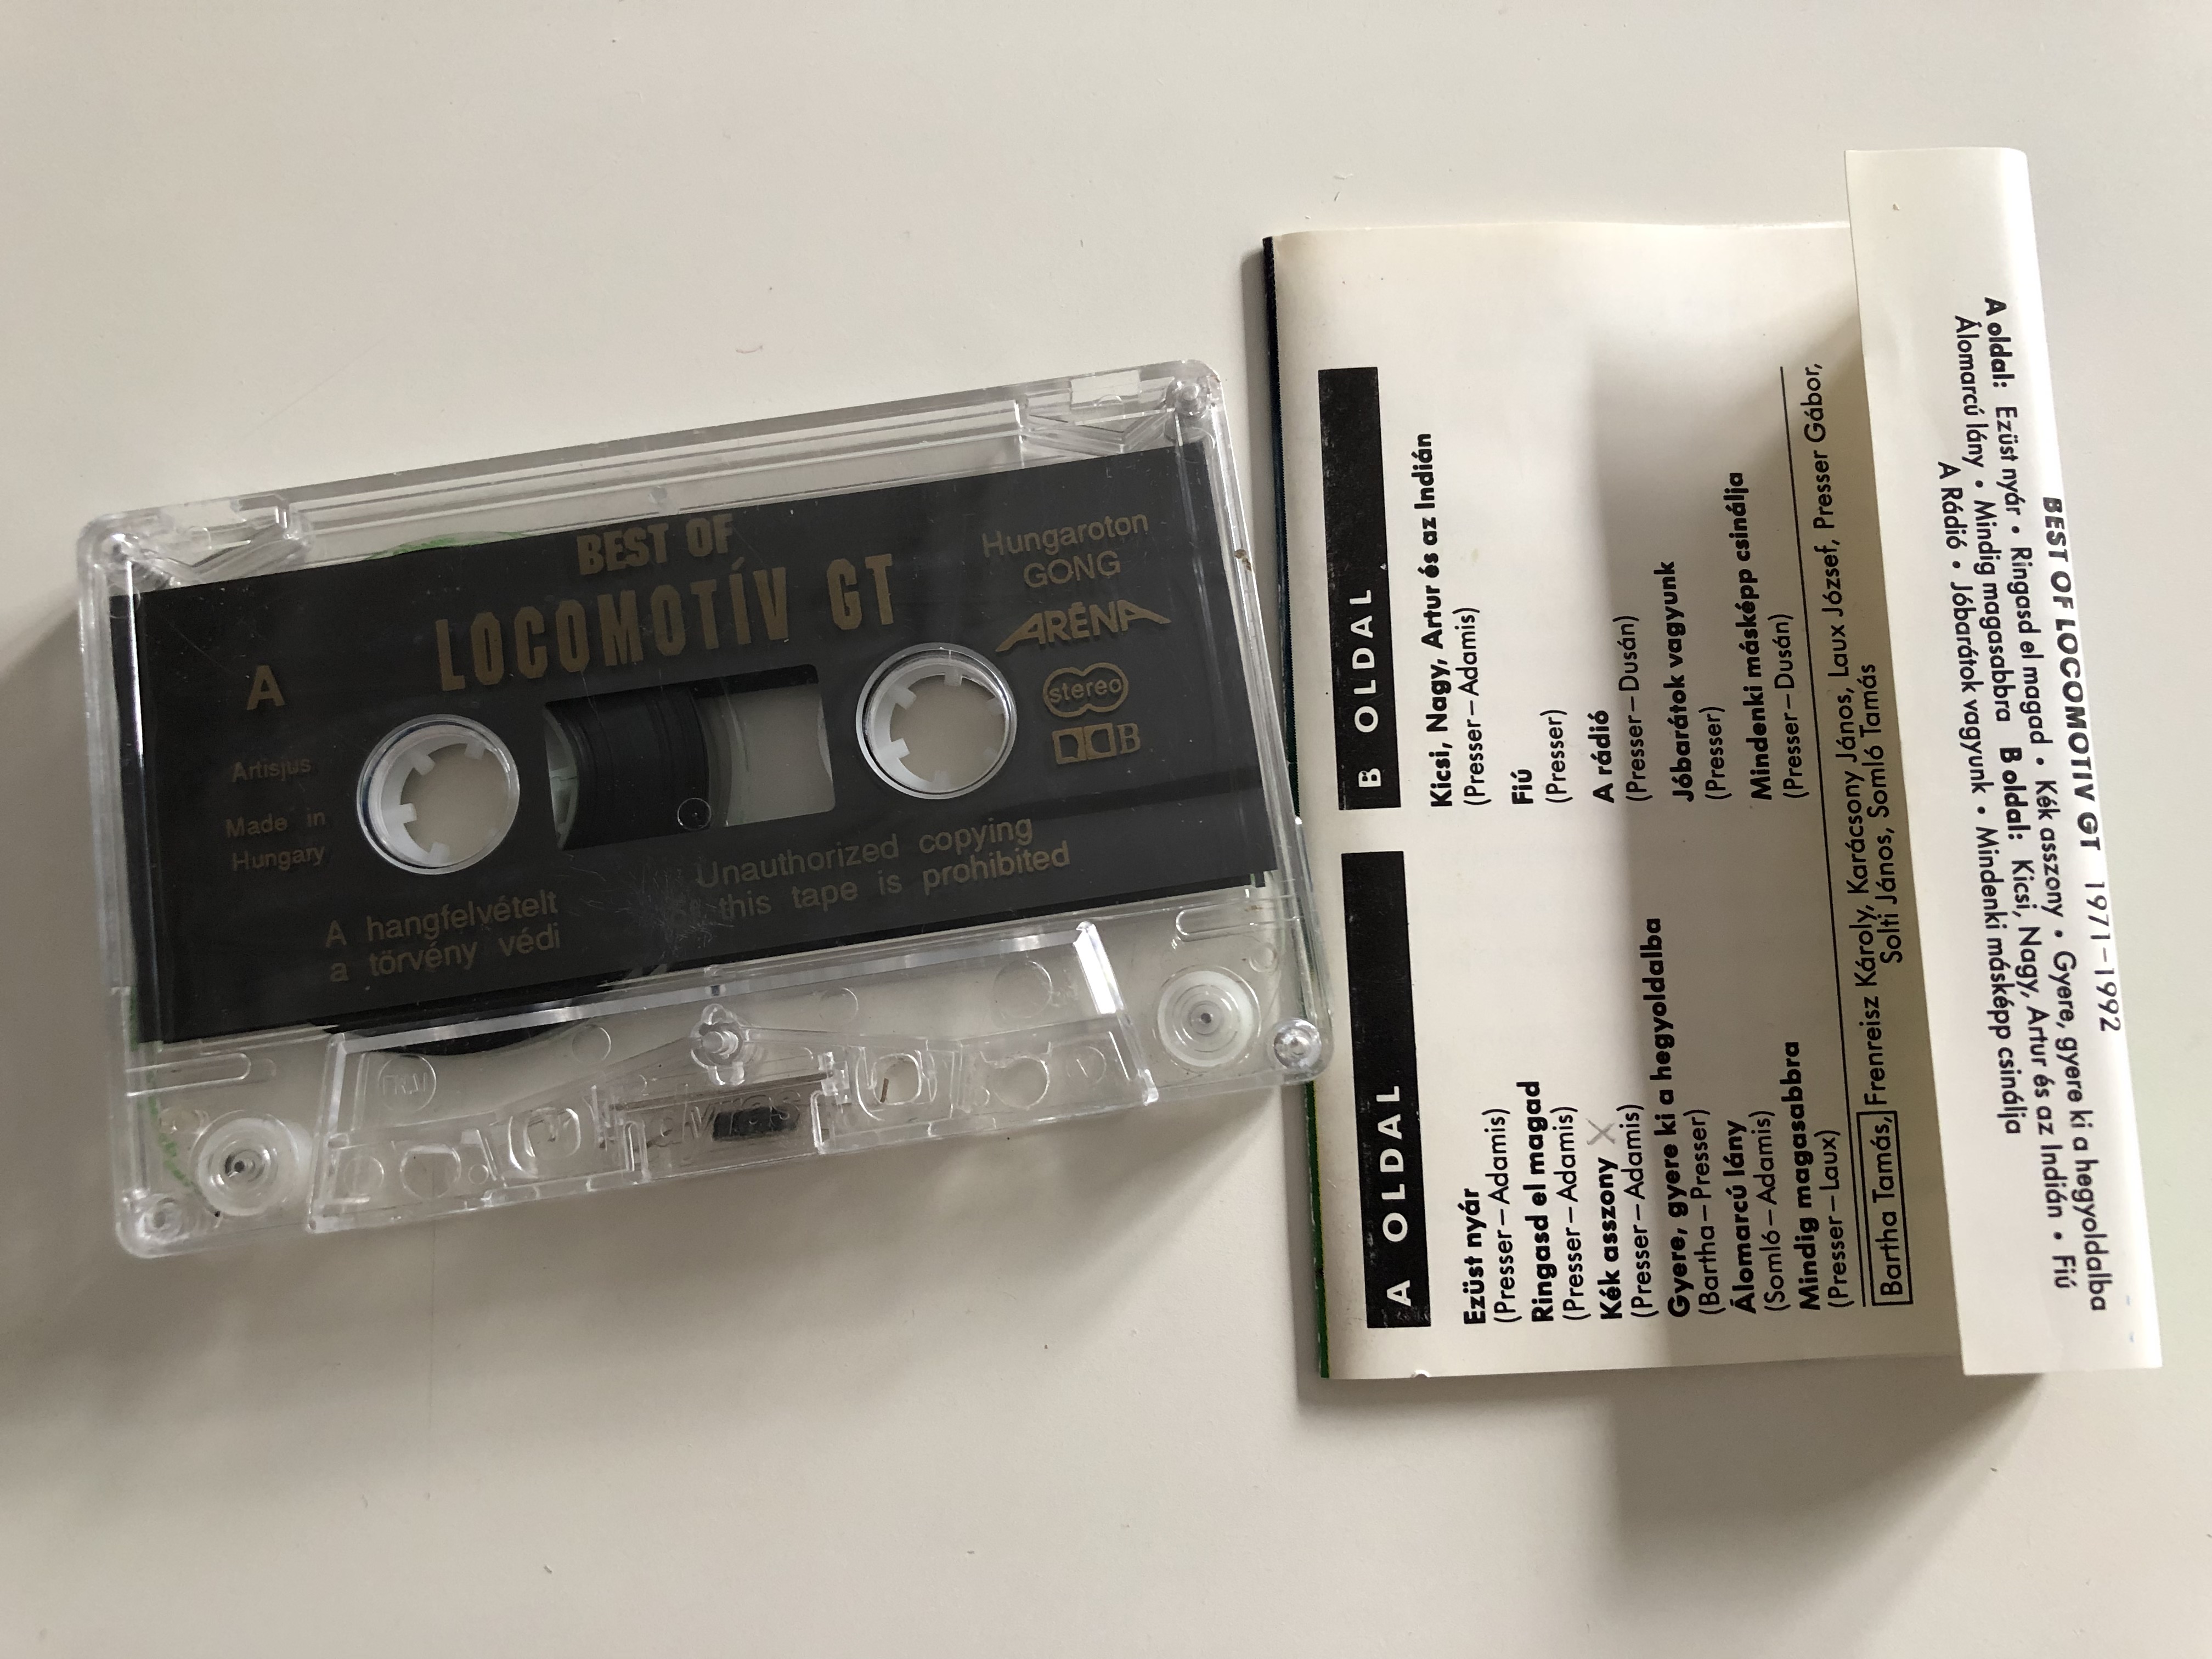 best-of-locomotiv-gt-1971-1992-hungaroton-gong-cassette-2-.jpg